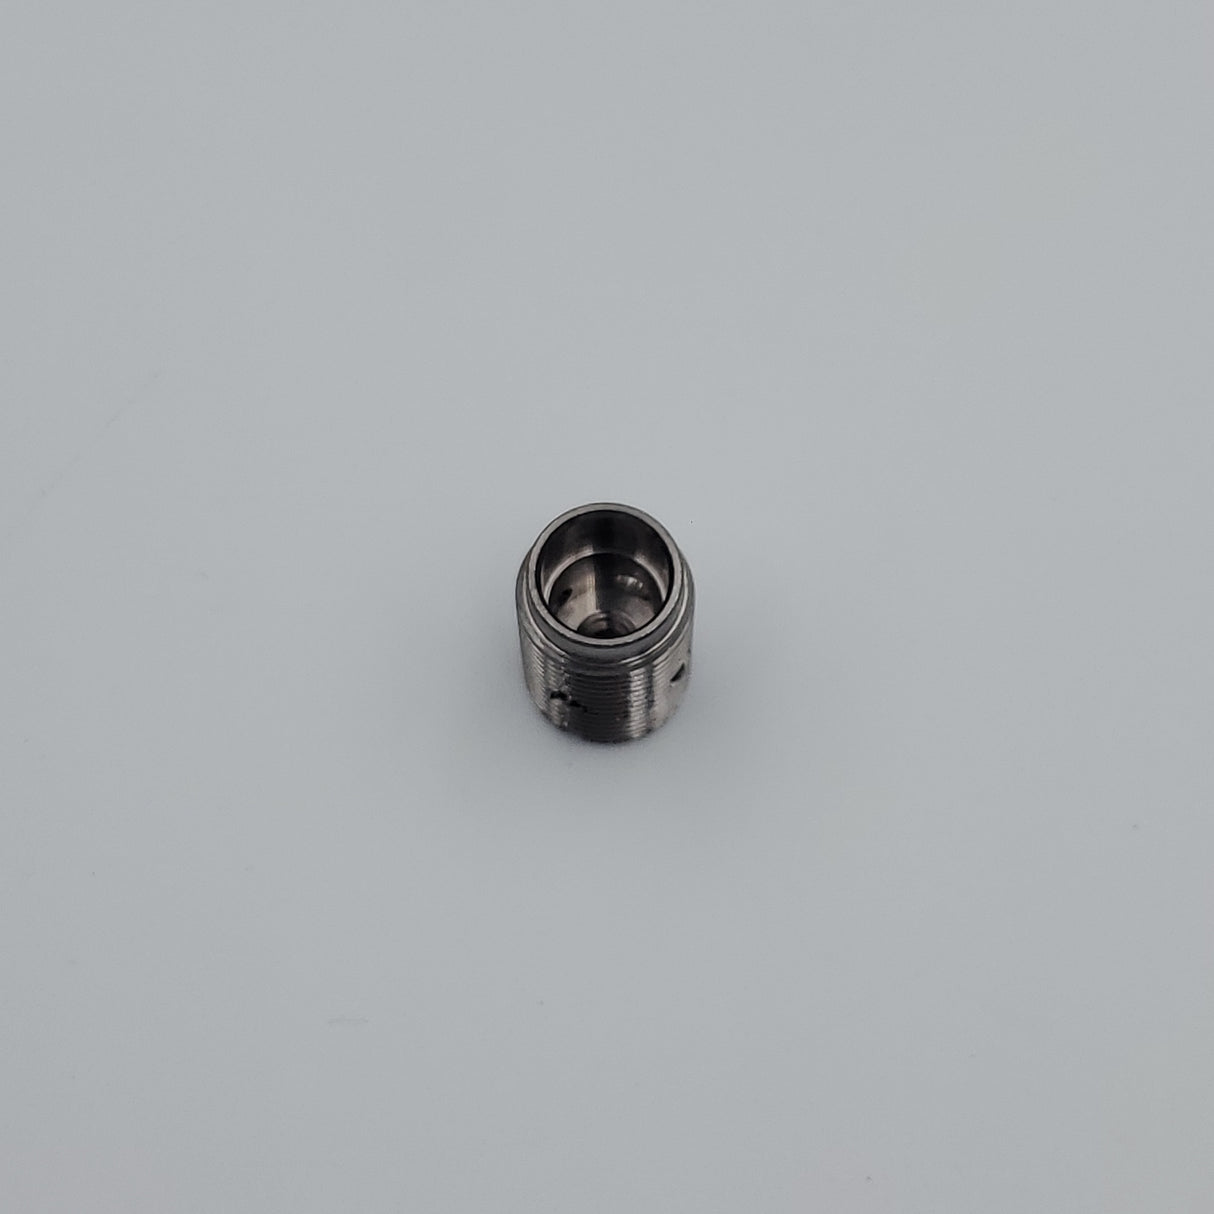 Valve screw for stainless steel kettle